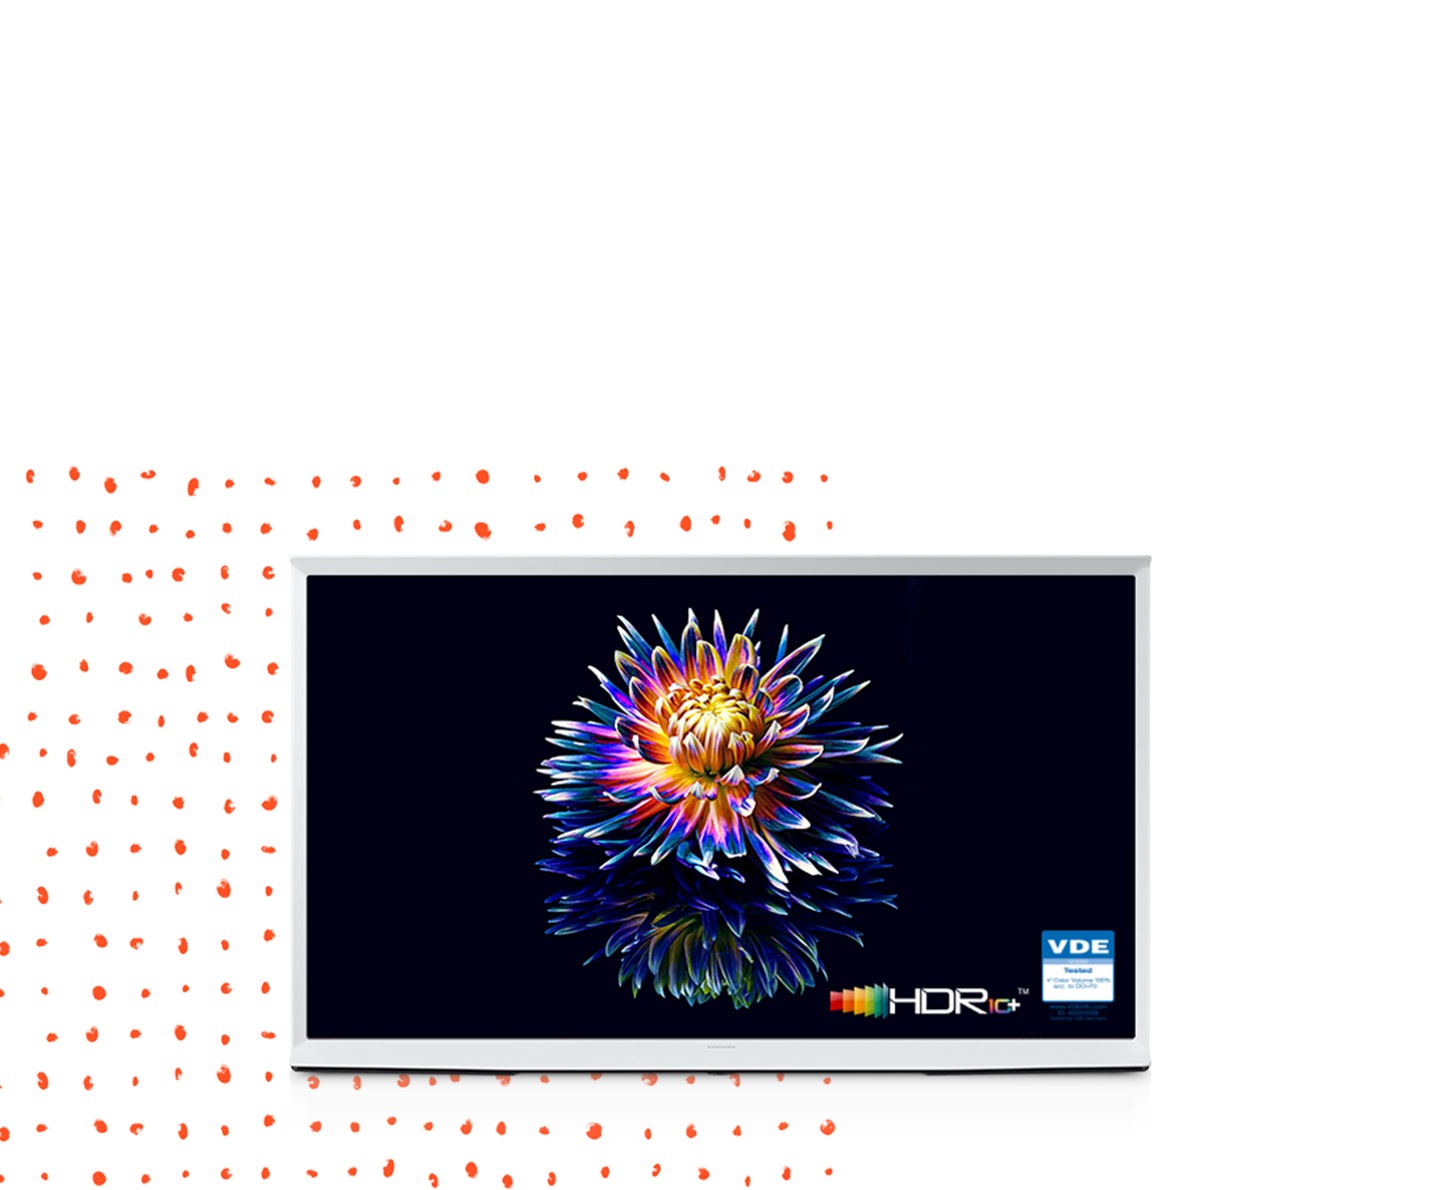 زهرة تتفتح على شاشة تلفزيون Serif بألوان زاهية.  يتم عرض شعاري † HDR 10+ 'و † VDE' في الأسفل.